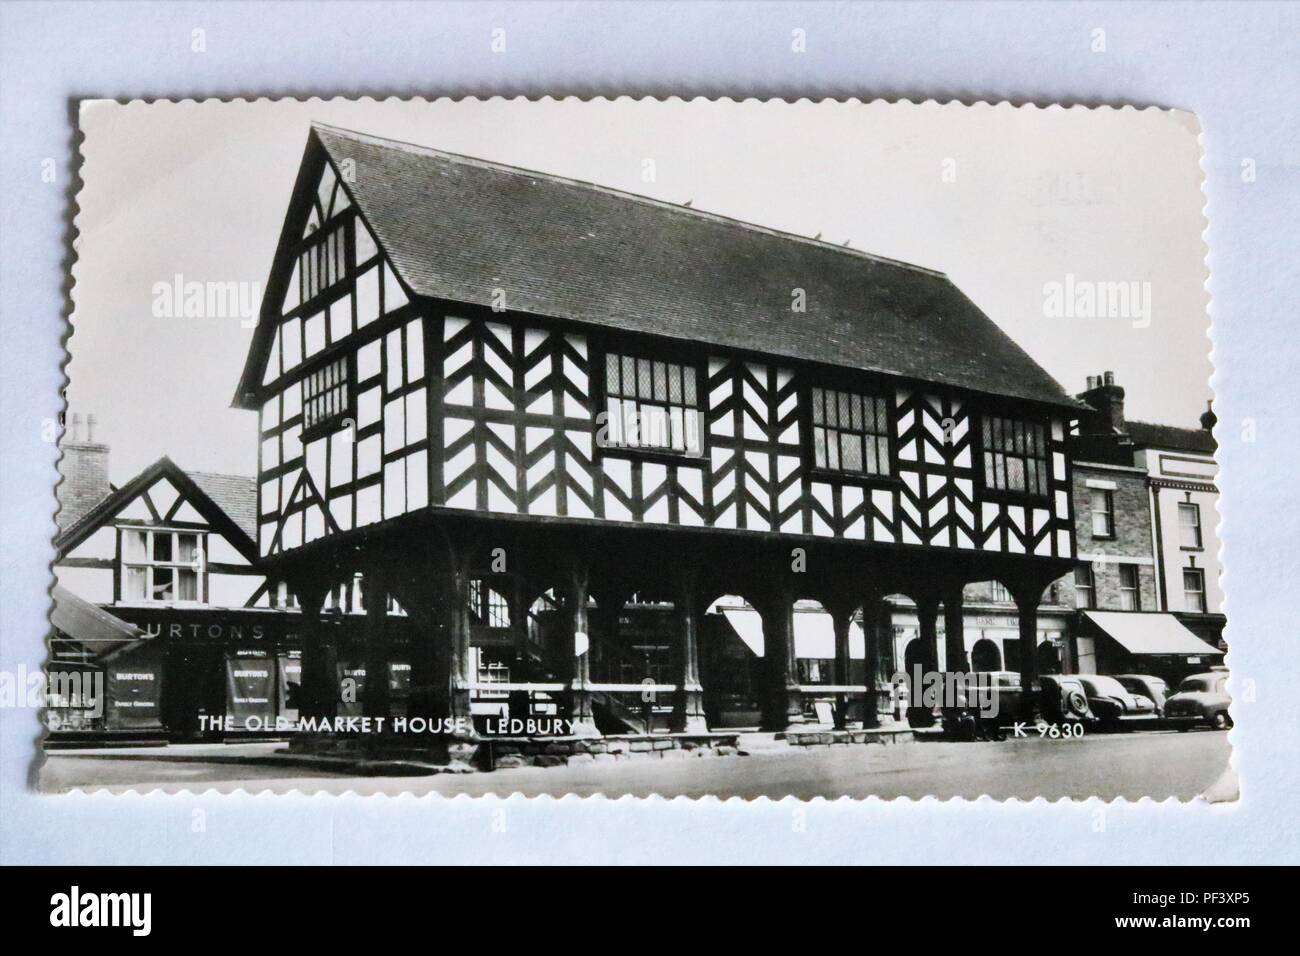 Le Old Market House, Ledbury, UK vieille carte postale en noir et blanc Banque D'Images